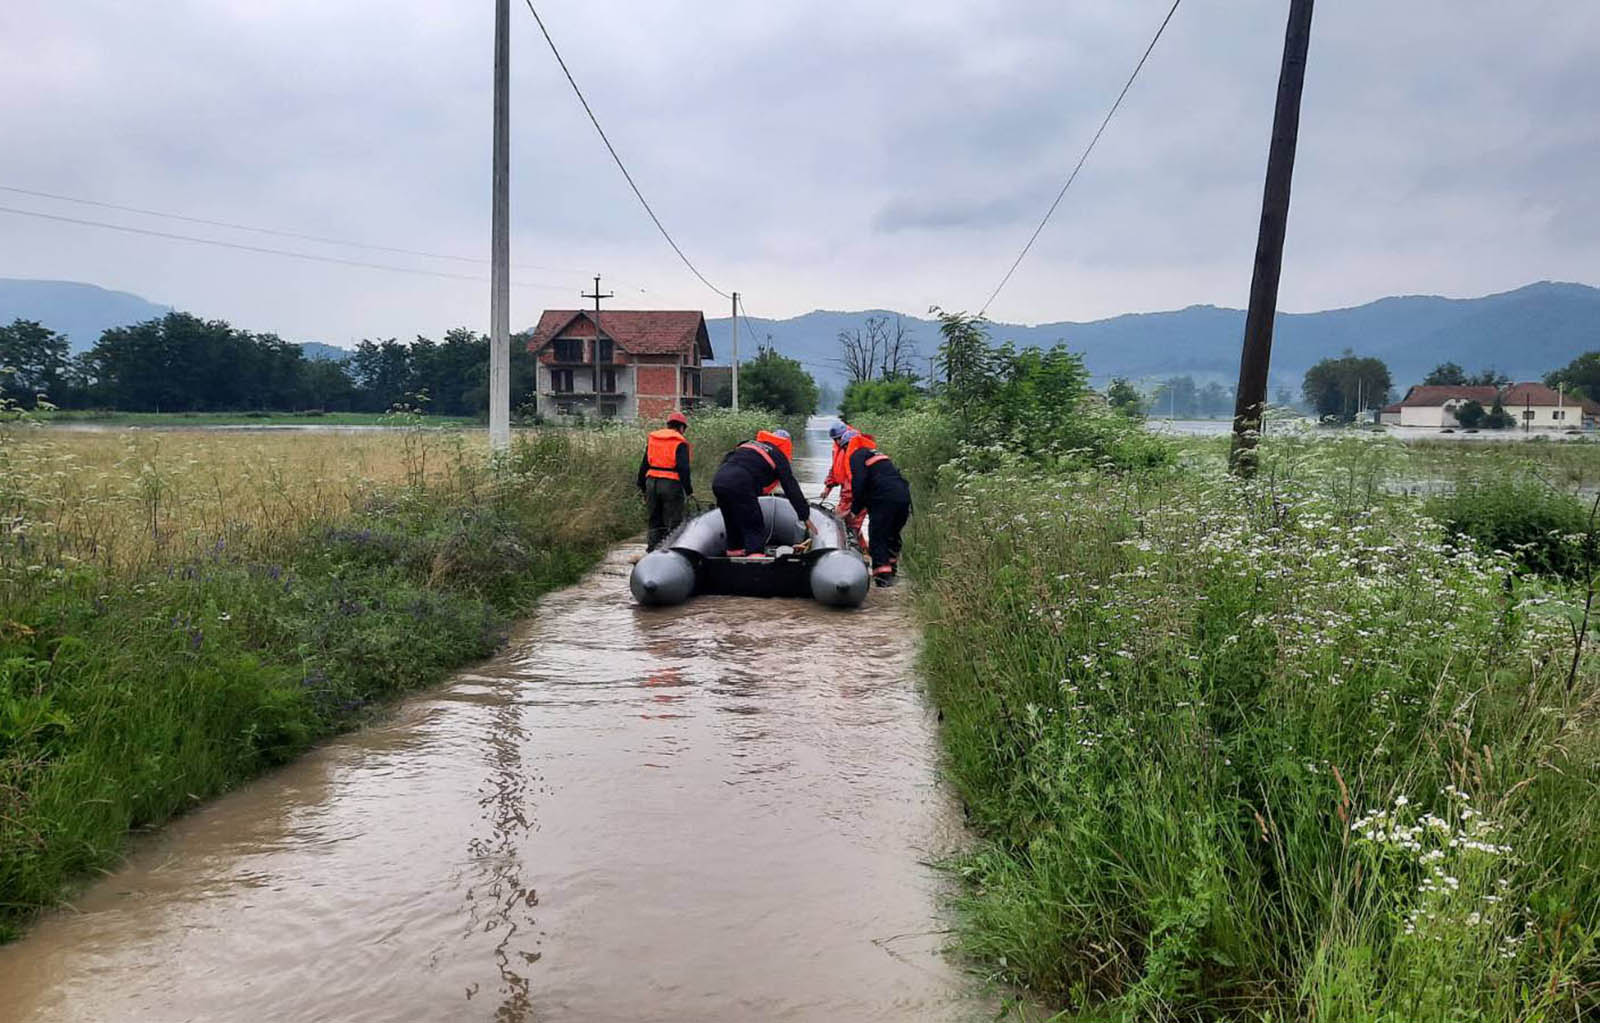 Pripadnici Ministarstva unutrašnjih poslova kontinuirano pomažu stanovništvu i nadziru sve vodotokove u Srbiji